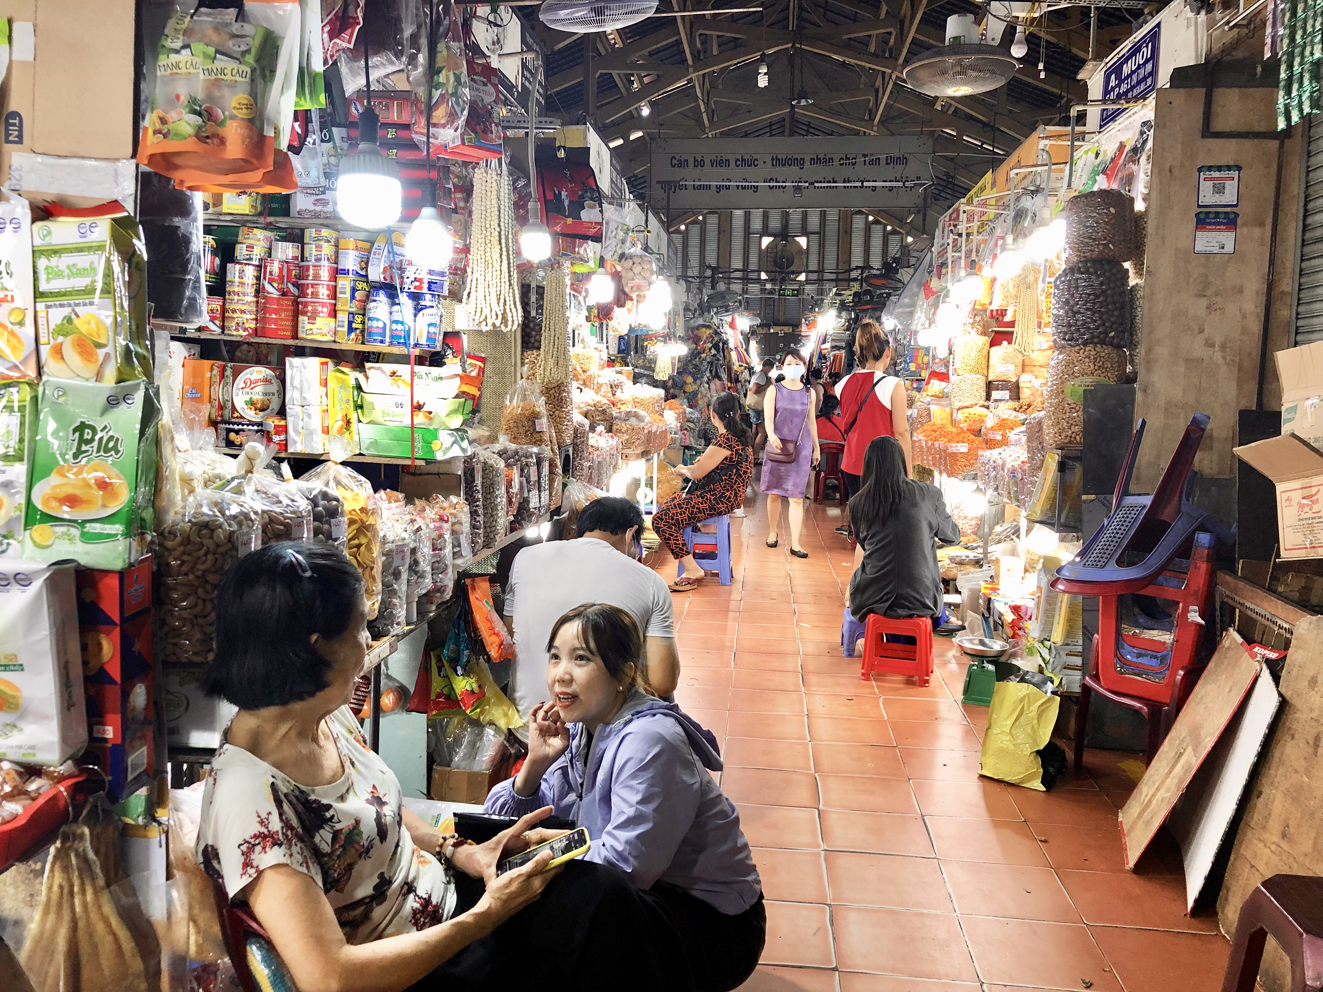 Sức mua ở chợ truyền thống đã thấp lại càng giảm thêm trước tình hình giá hàng hóa liên tục tăng - ẢNH: THANH HOA  (chụp ở chợ Tân Định, quận 1, TPHCM ngày 15/5)